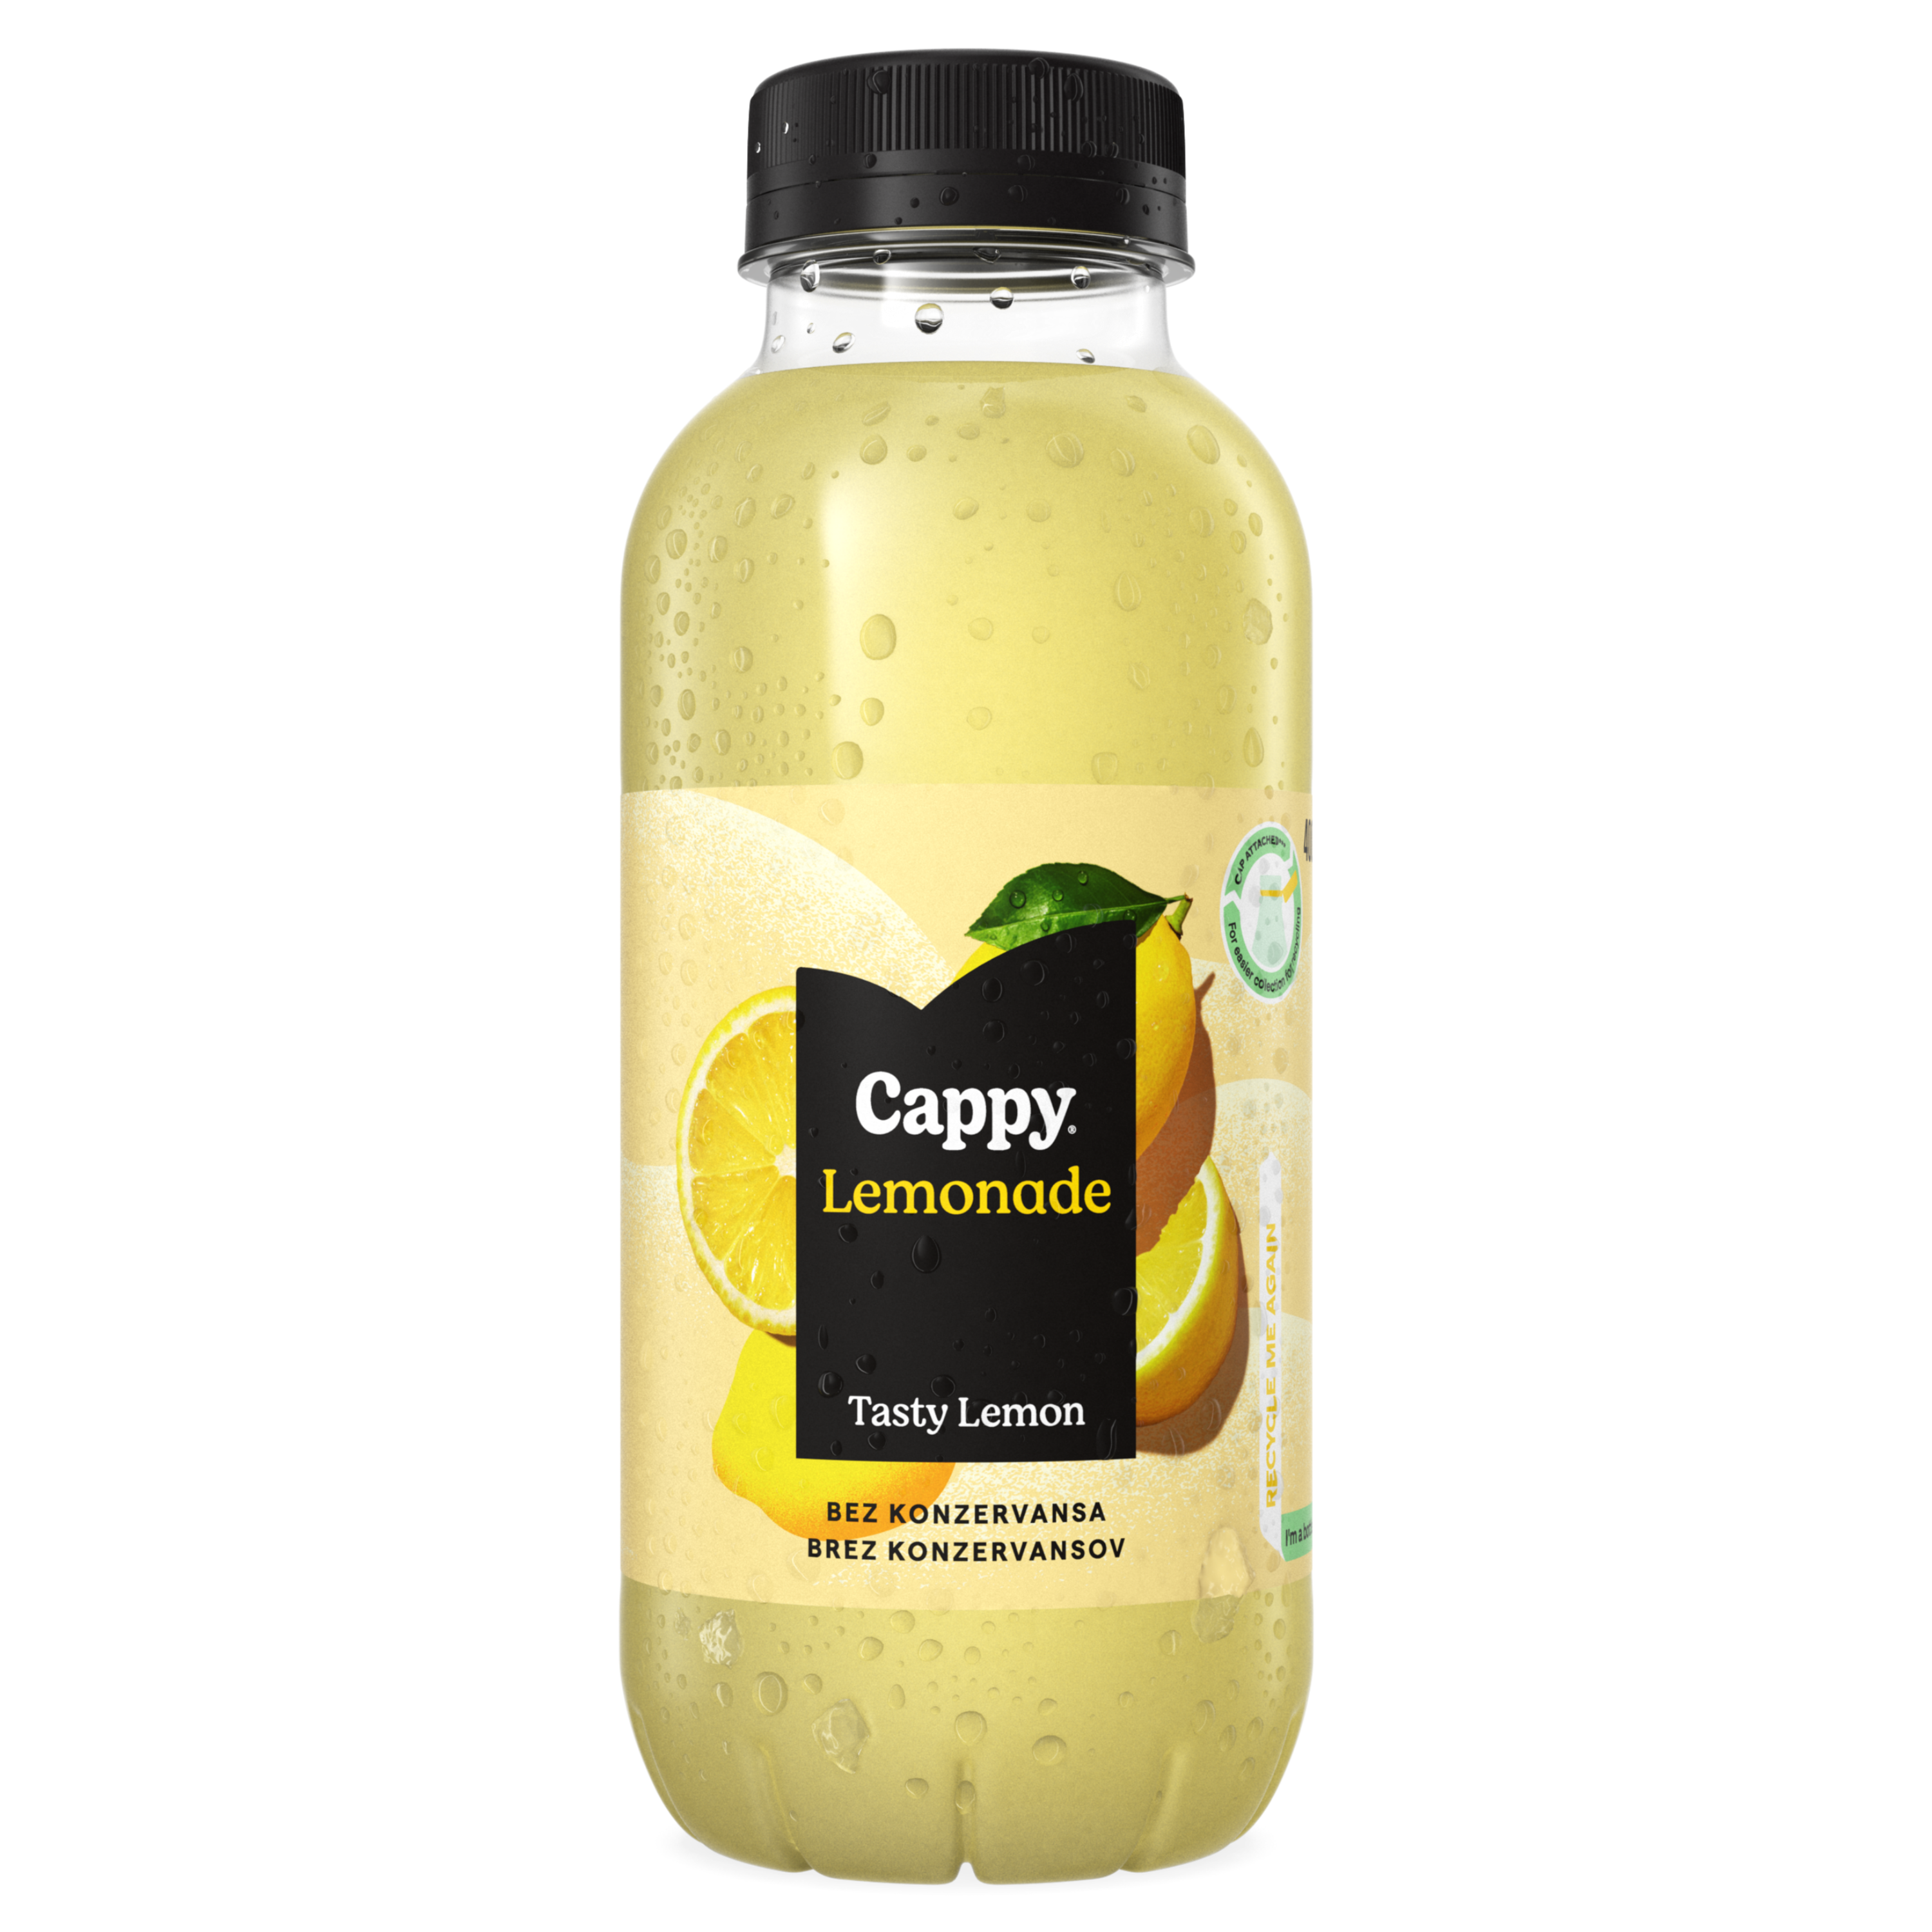 Cappy Lemonade Tasty Lemon